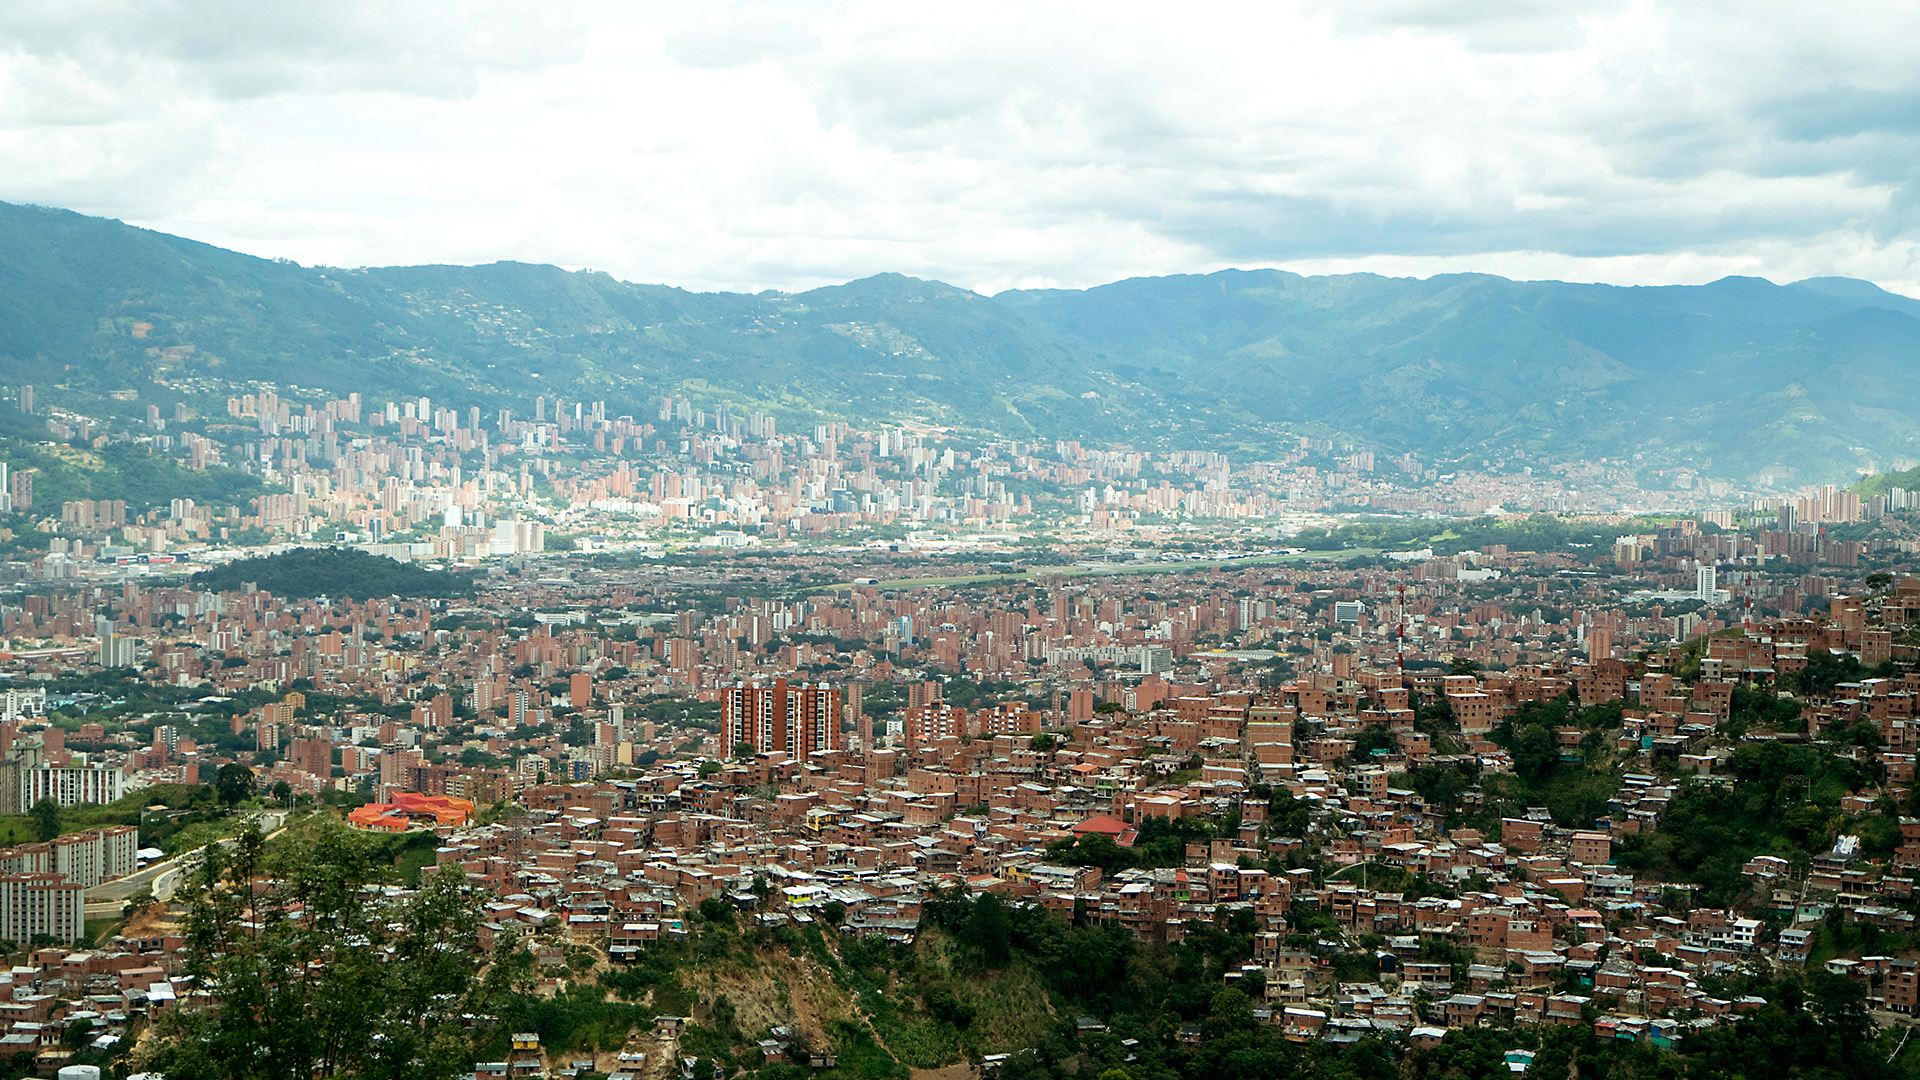 The Life-Sized City - E1 - Medellin